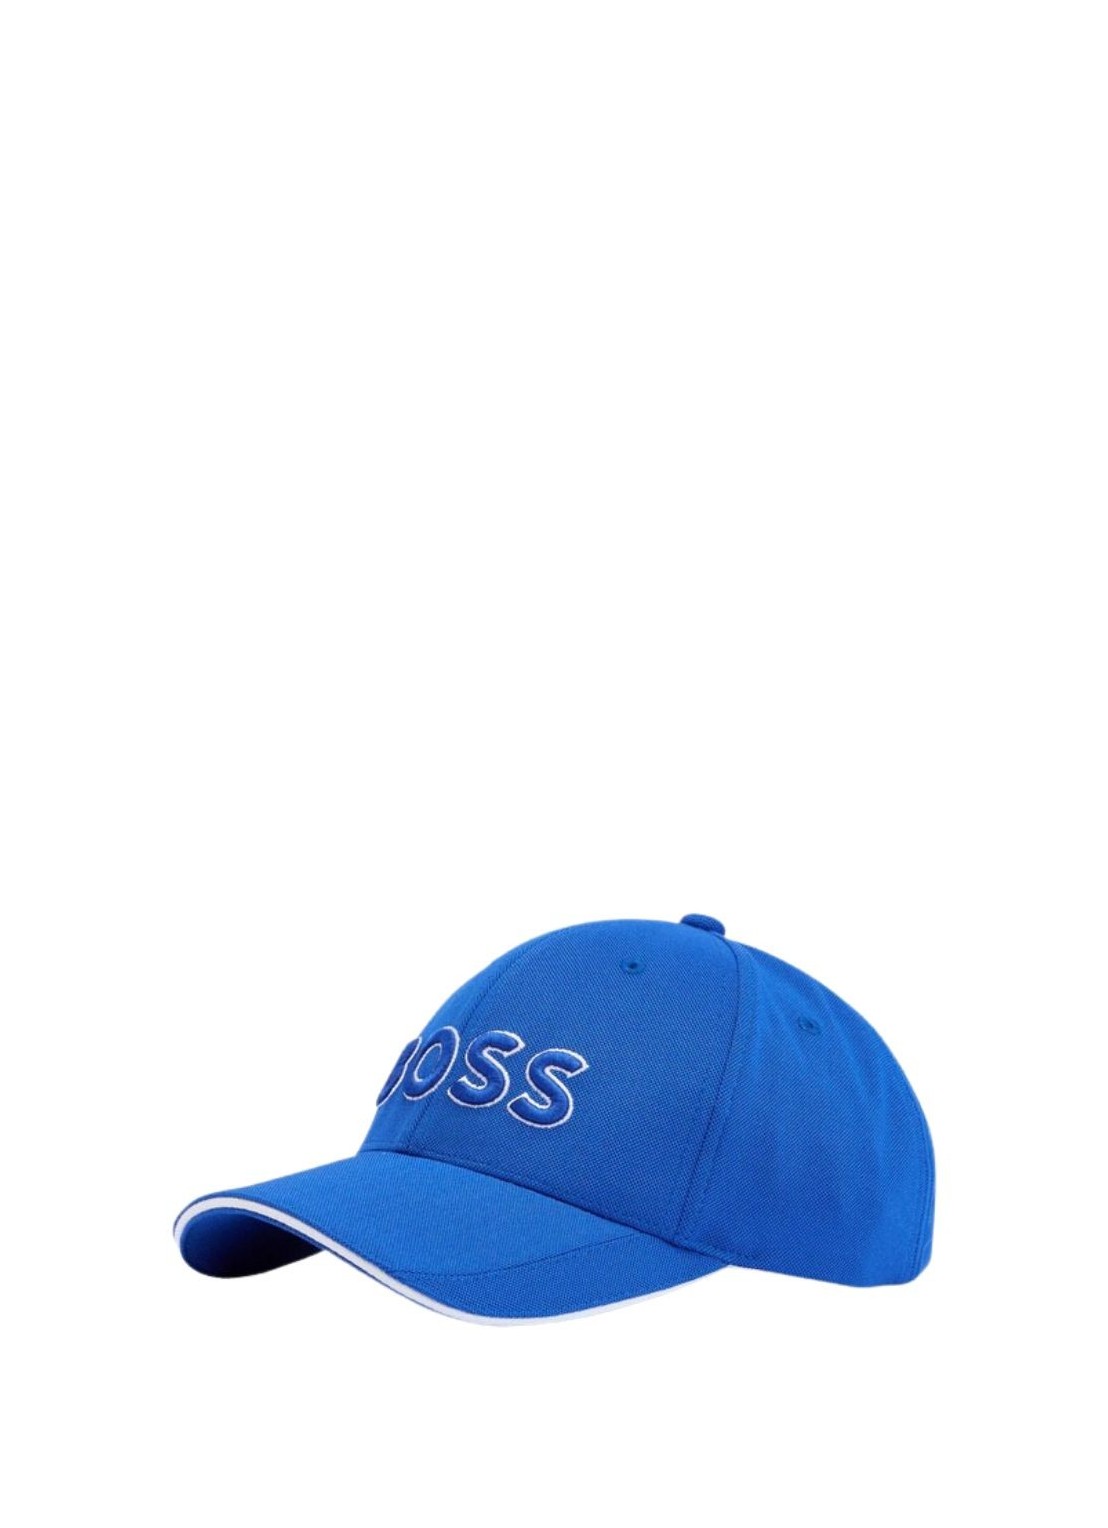 boss Talla cap-us-1 T/U 50496291 - 438